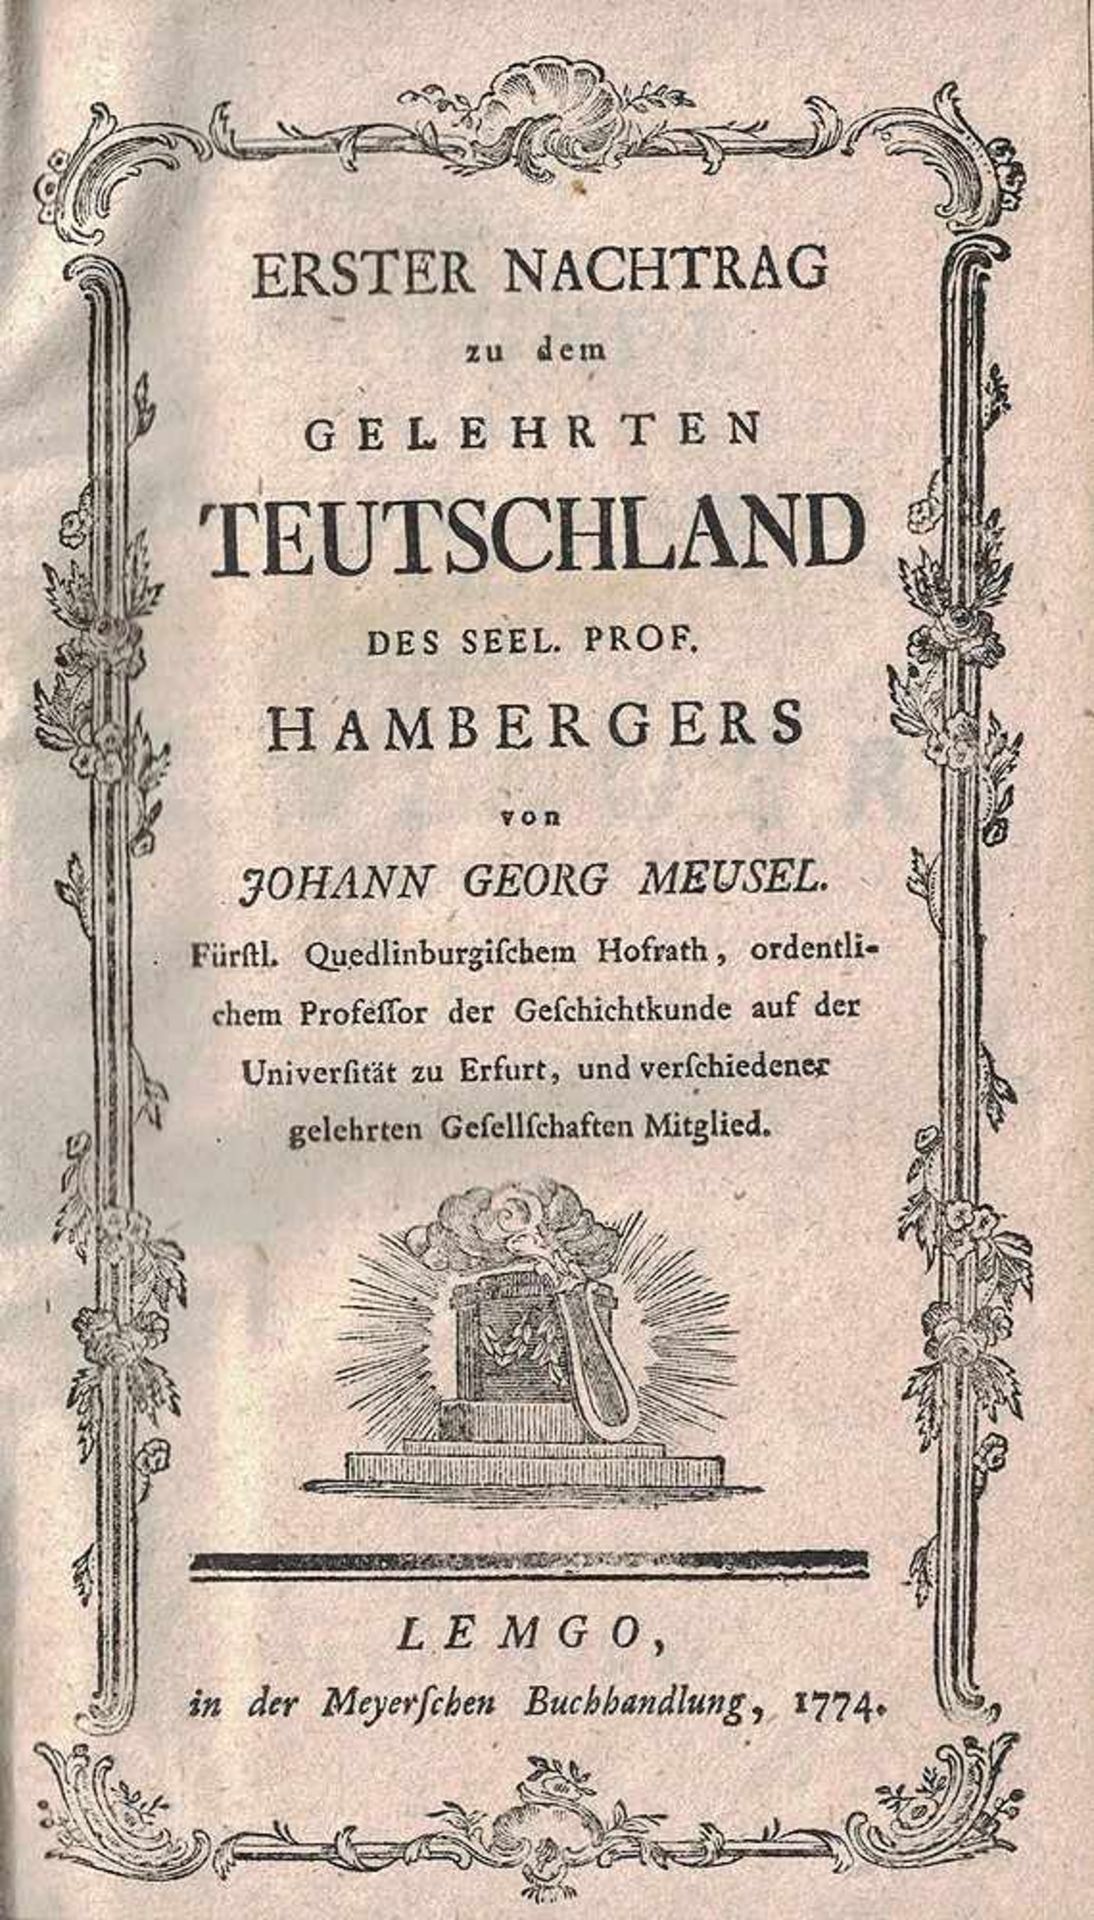 Das Gelehrte Teutschland oder Lexikon der jetzlebenden Teutschen Schriftsteller. 1.Band... 1783 - Bild 2 aus 2